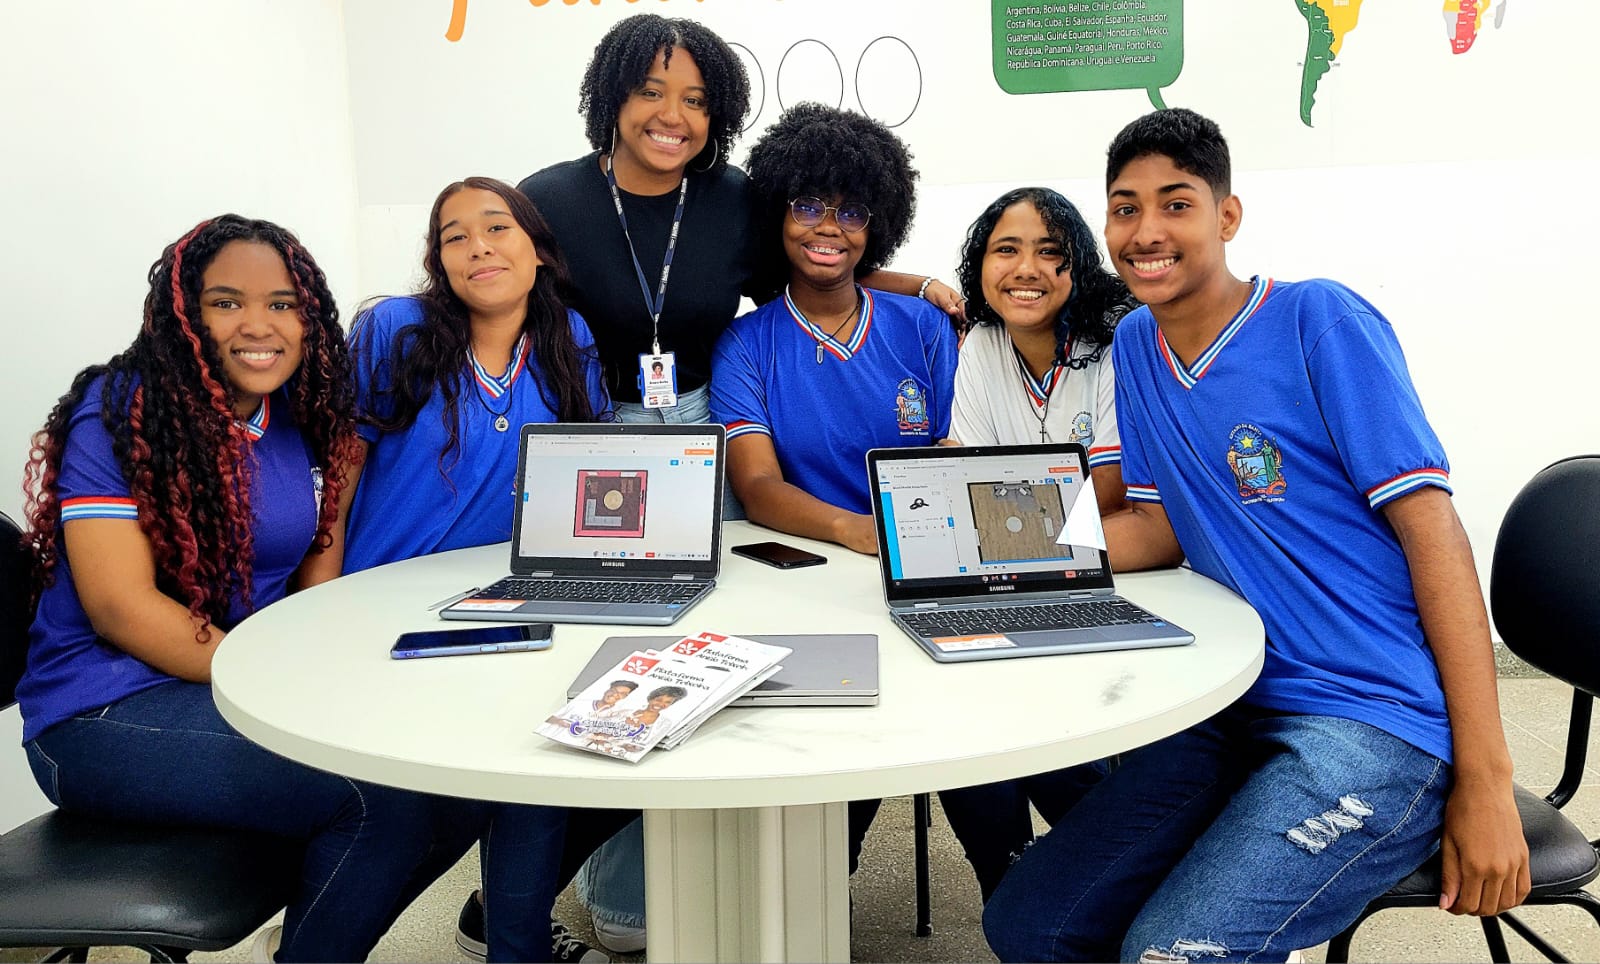 SEC realiza Caravana Digital e entrega de 667 Chromebooks para escolas de Lauro de Freitas